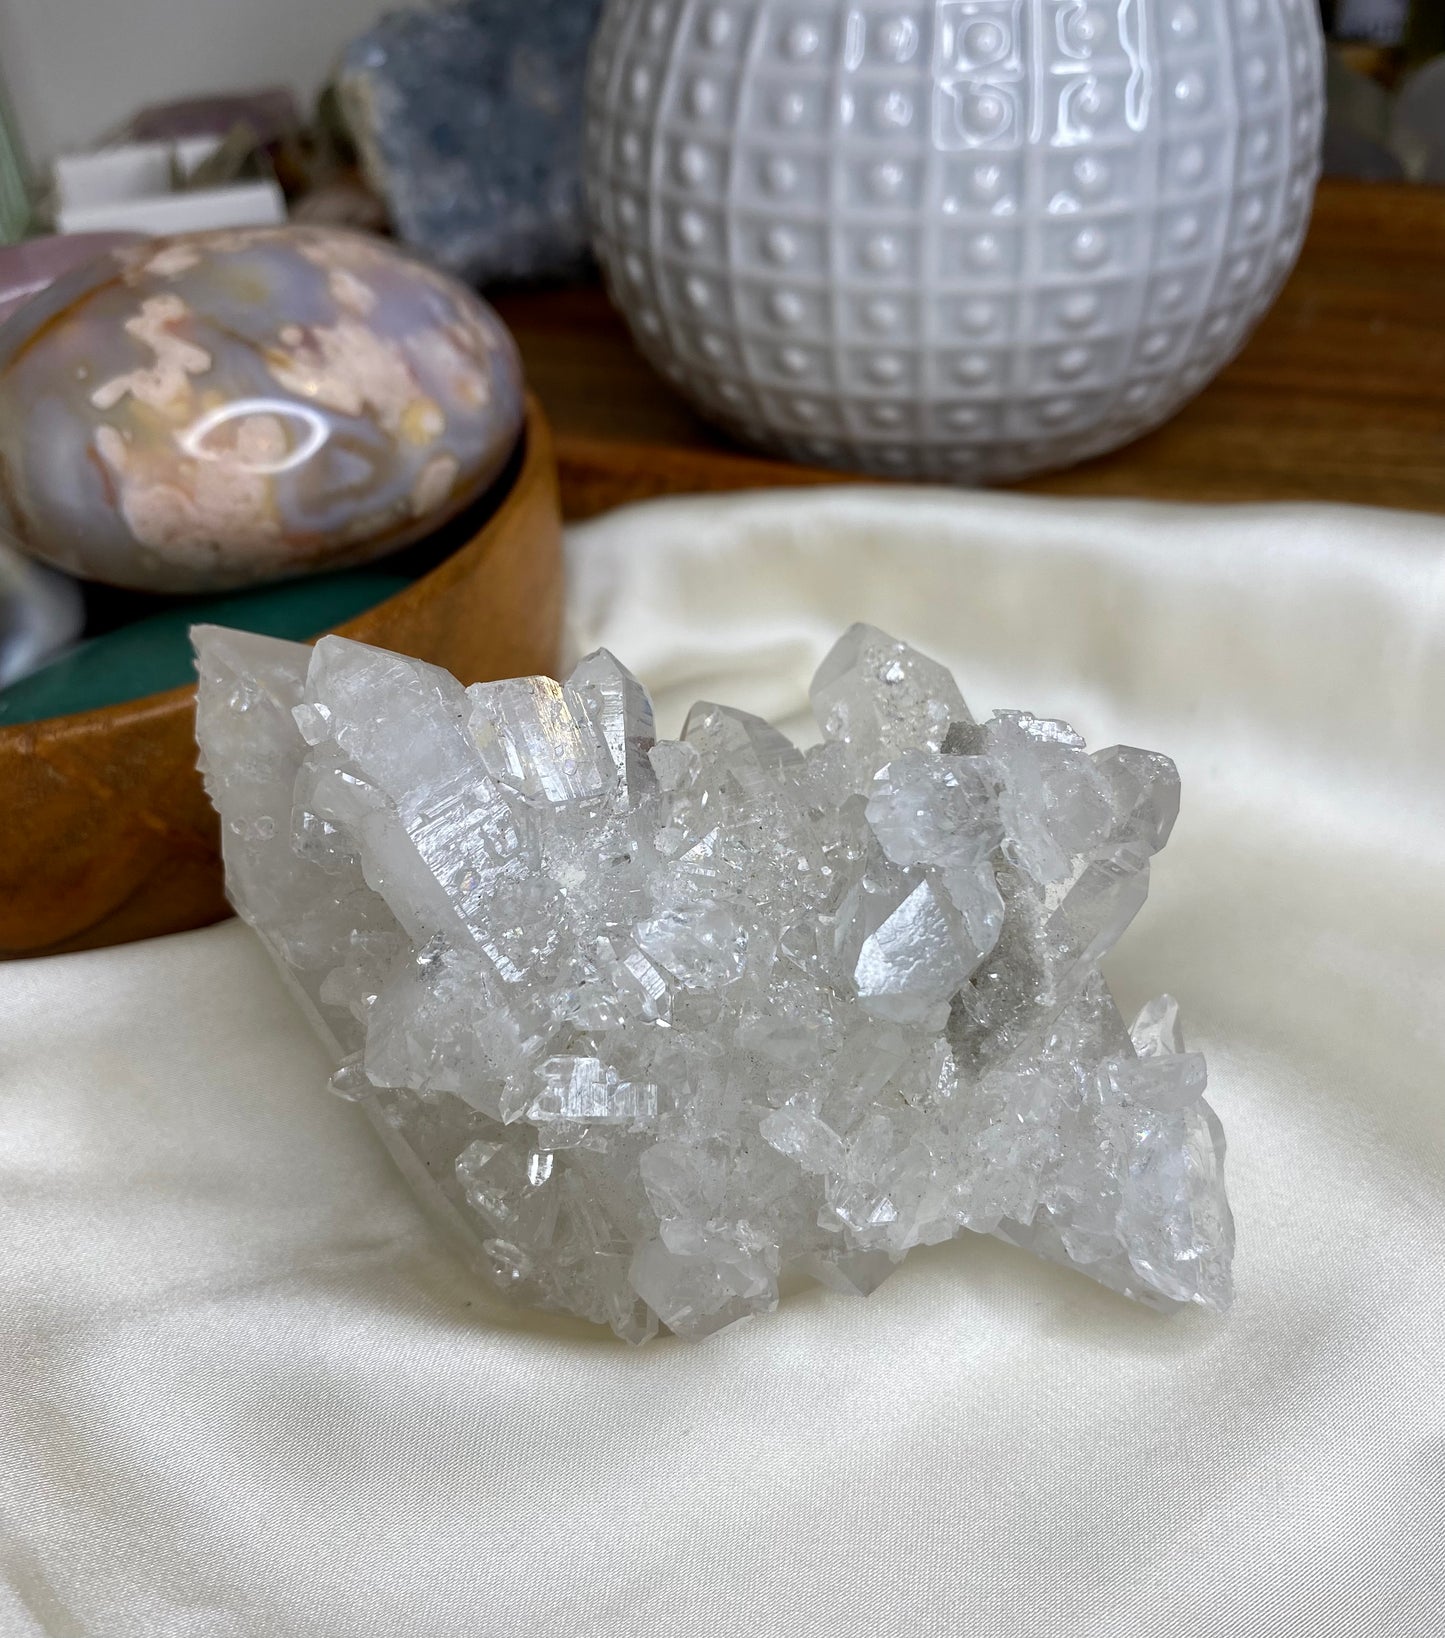 Bergkristall kluster